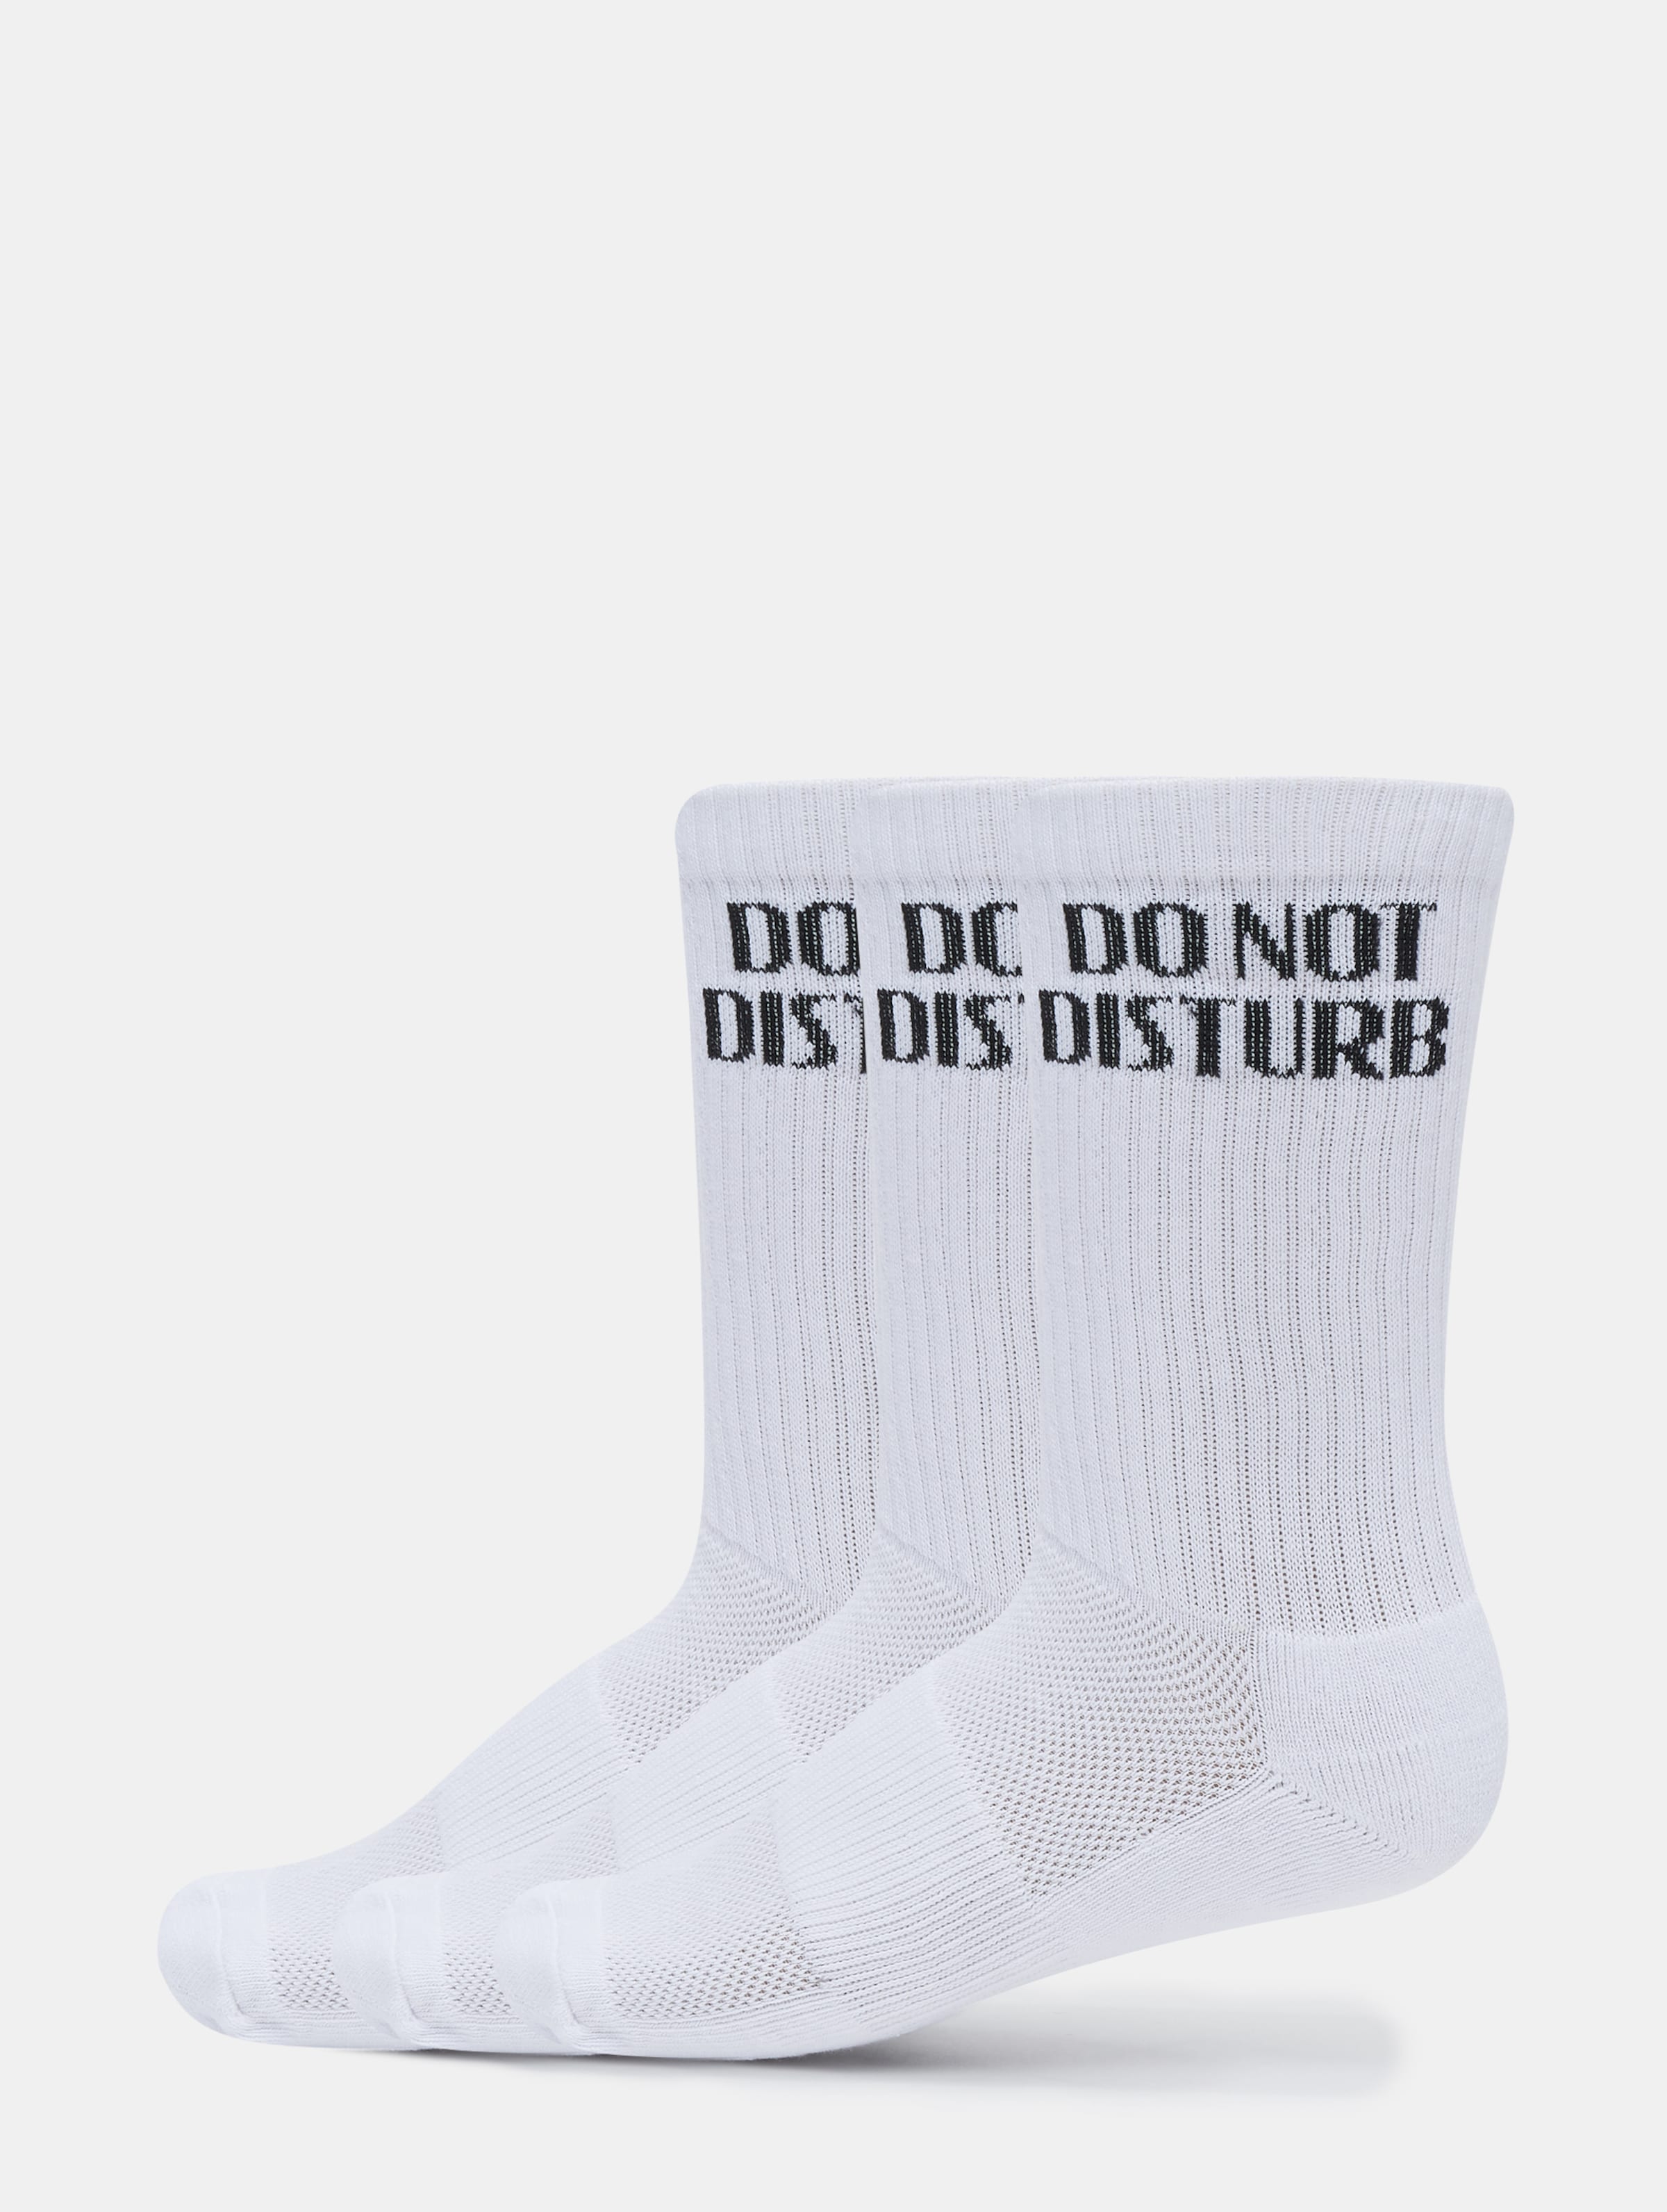 PEGADOR Do not Disturb Socks 3er Pack Frauen,Männer,Unisex op kleur wit, Maat 43-46